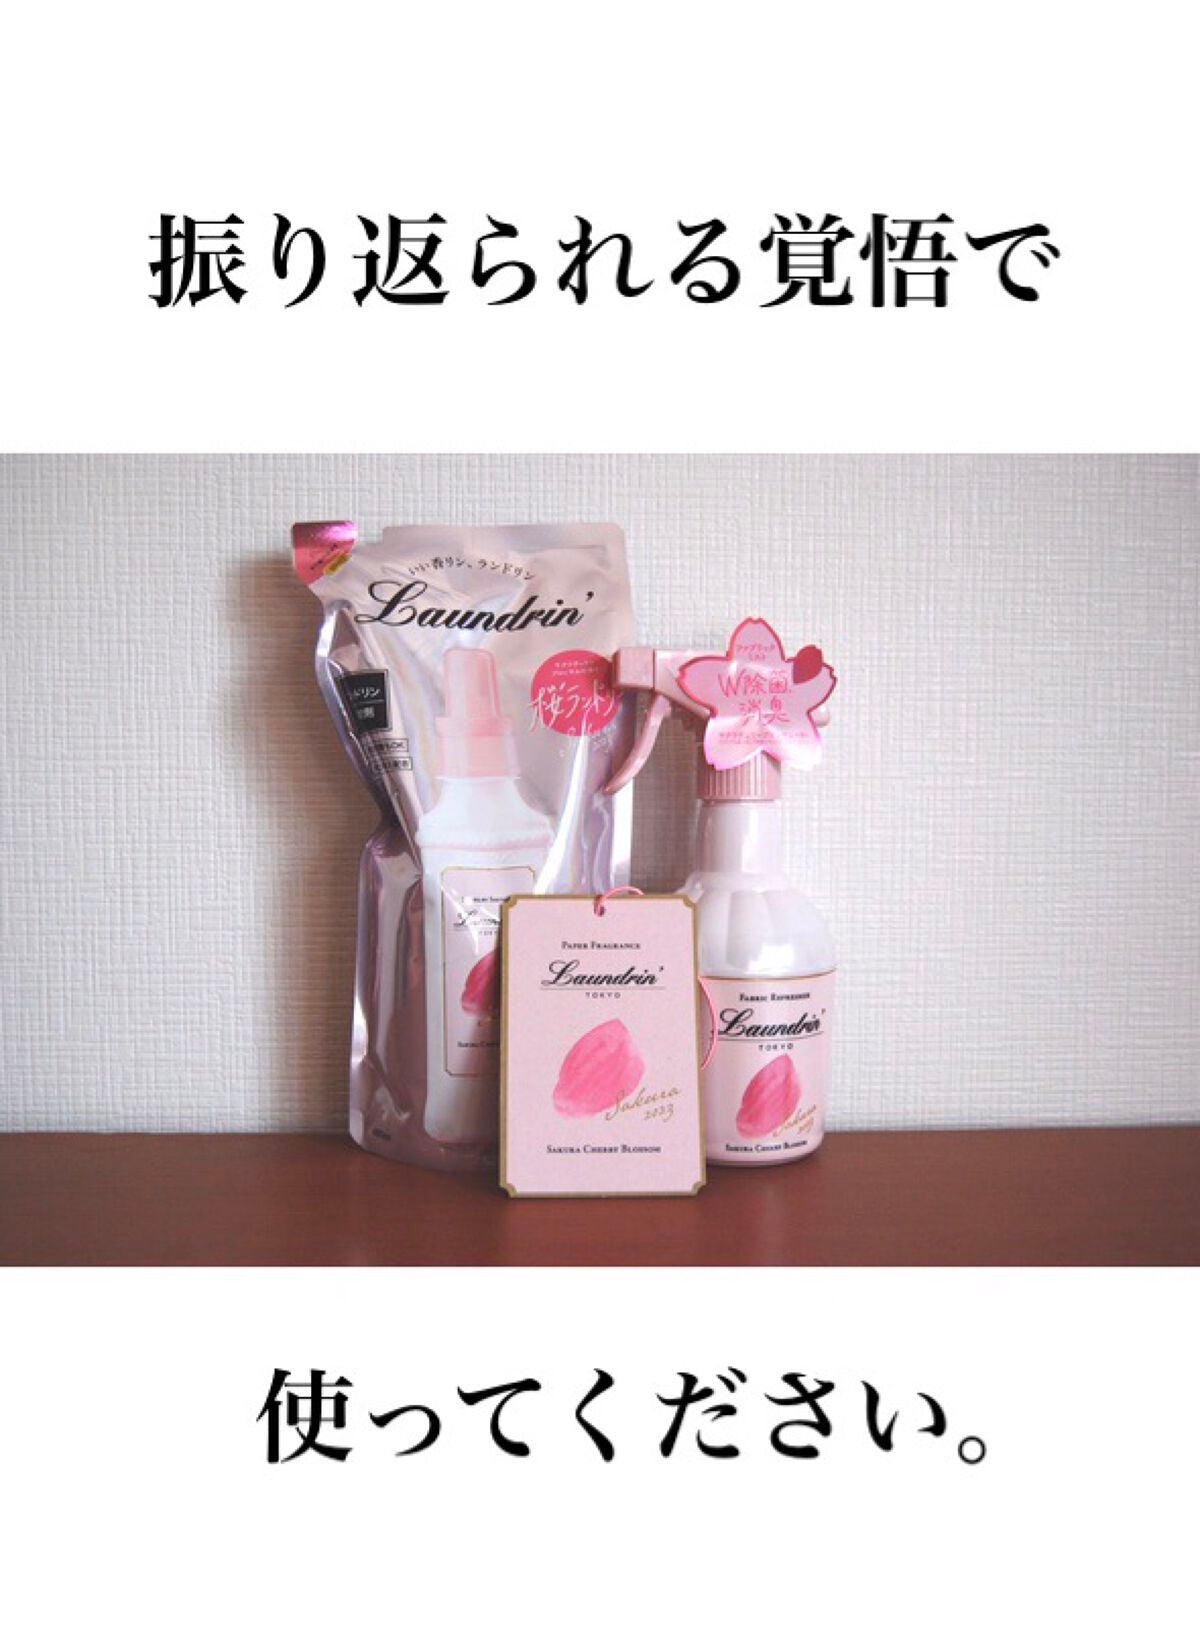 日本公式 ランドリン 柔軟剤 サクラチェリーブロッサム2022 洗剤/柔軟